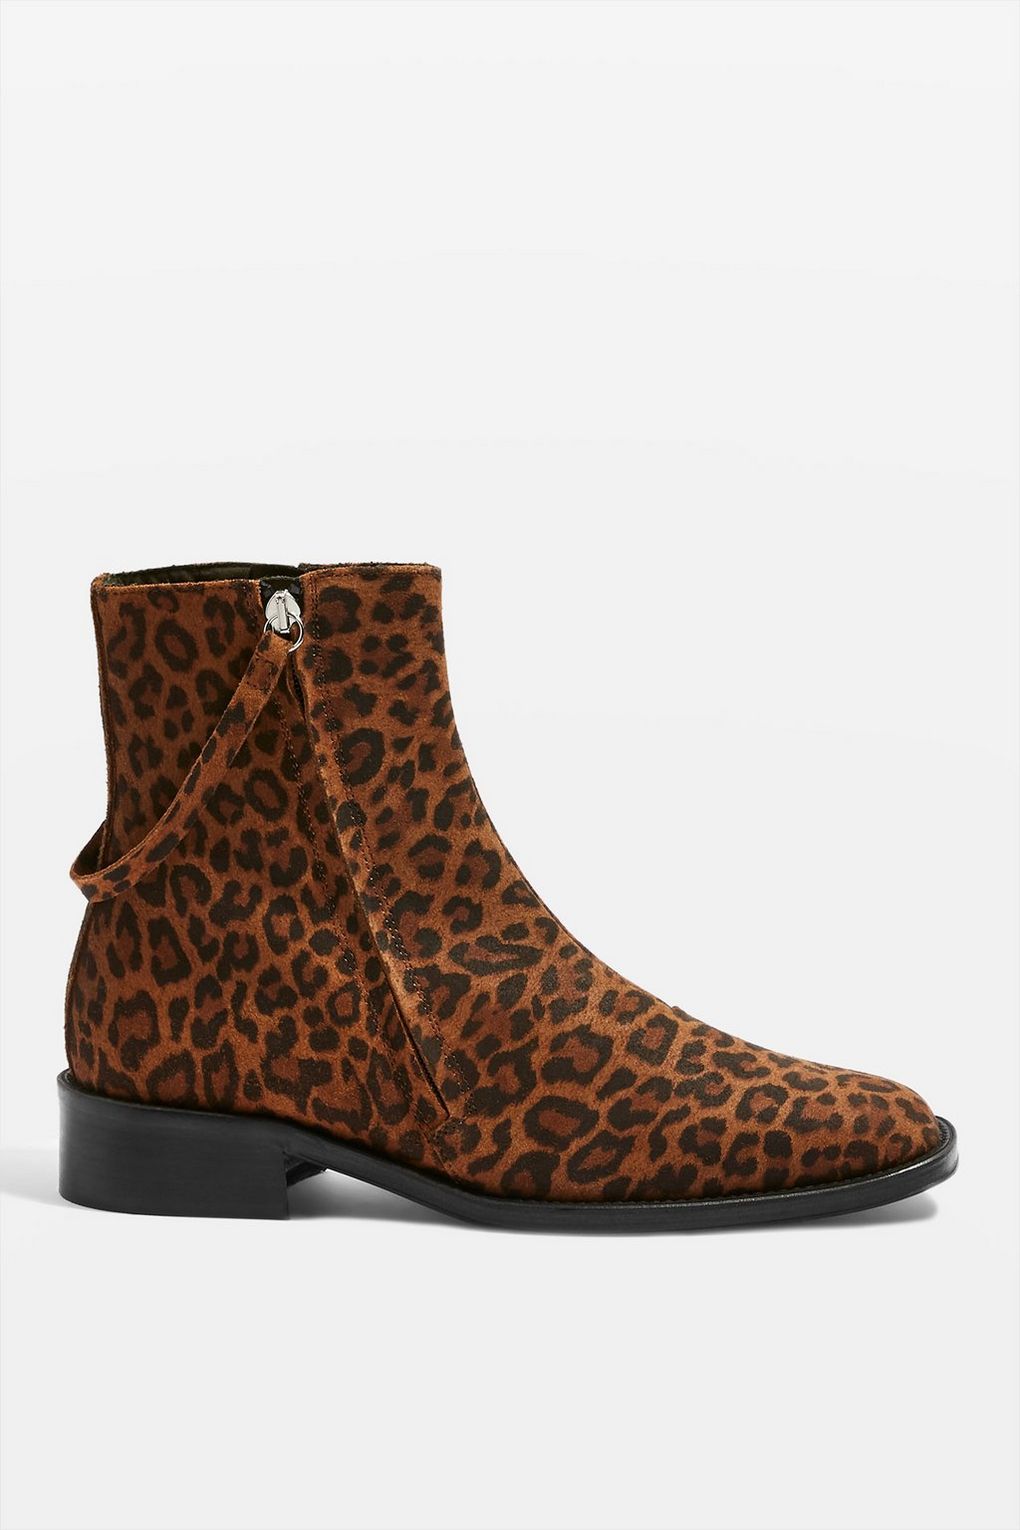 Topshop Aubrey Flat Leopard Print Boots